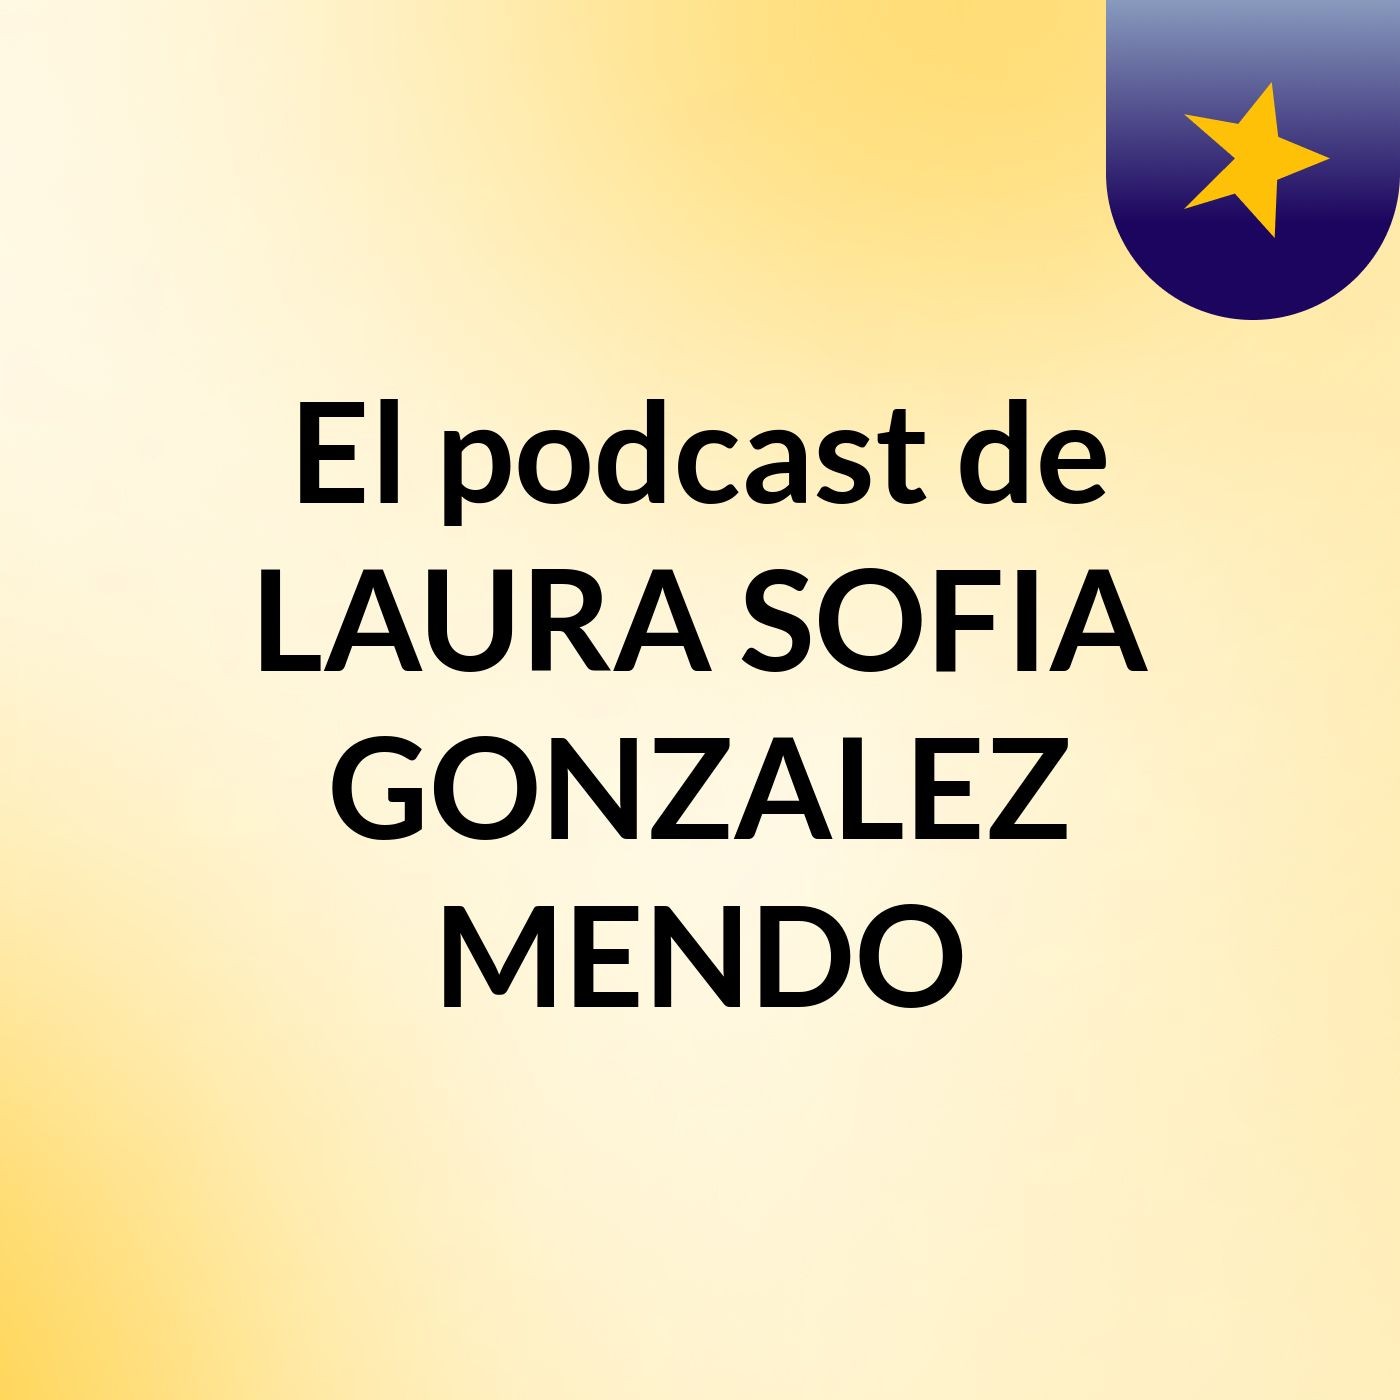 El podcast de LAURA SOFIA GONZALEZ MENDO